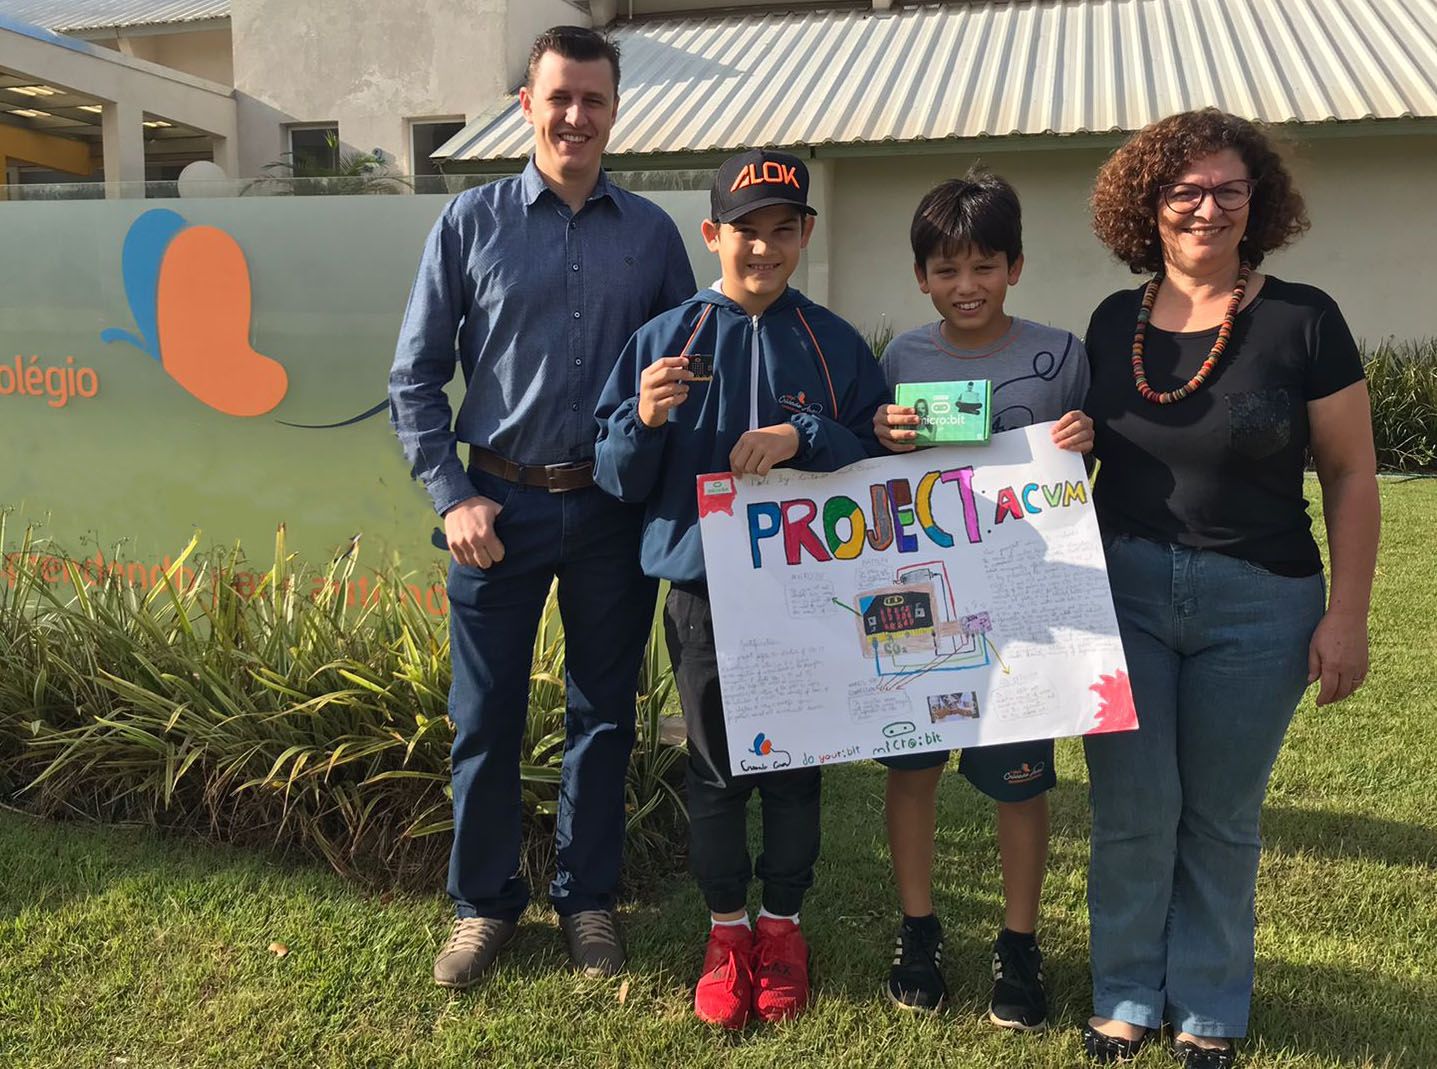 Vinicius en Antonio houden hun ontwerp poster omhoog buiten school met hun leraren